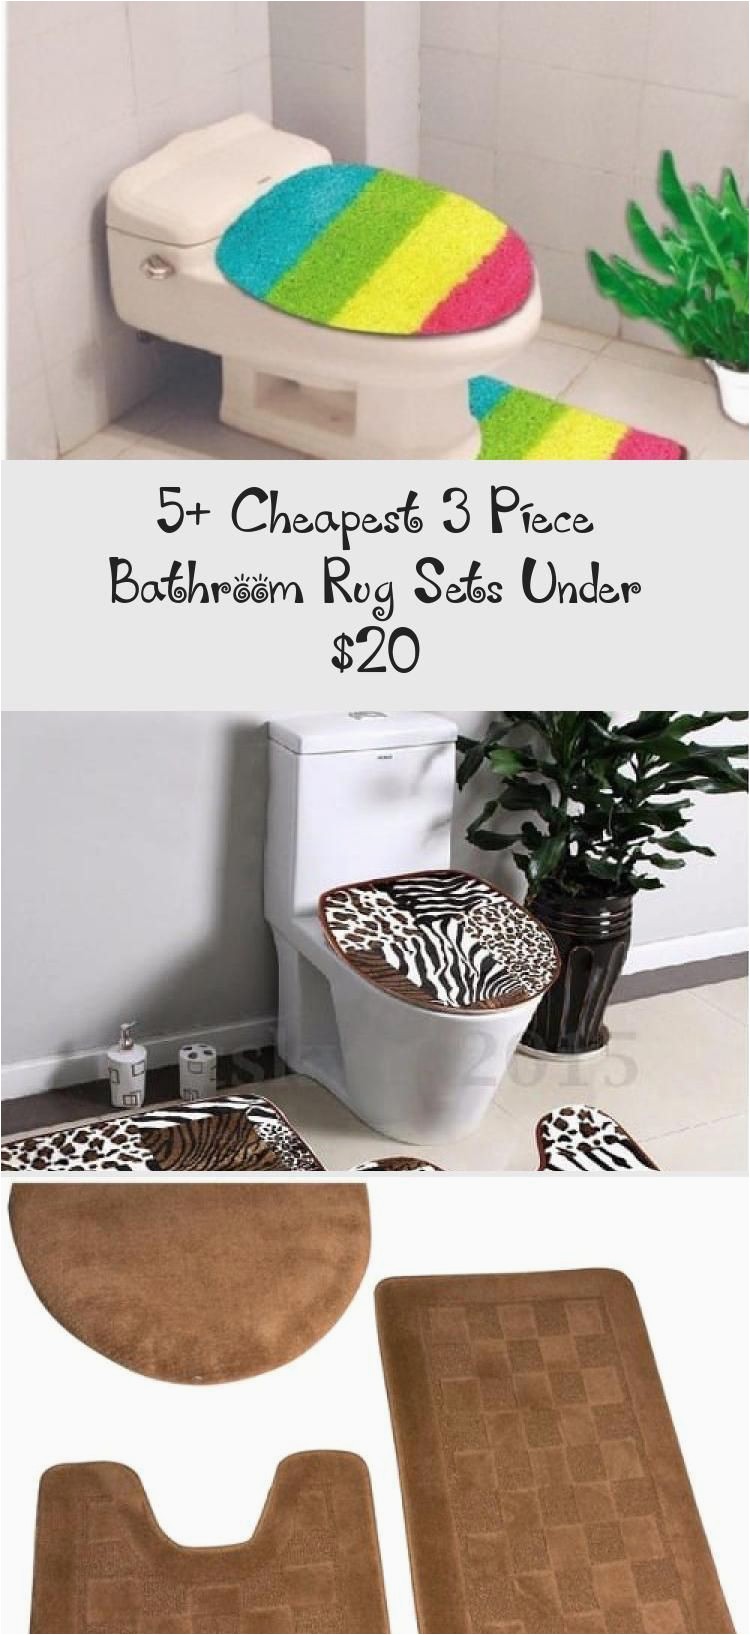 Marble Bathroom Rug Set 5 Cheapest 3 Piece Bathroom Rug Sets Under $20 Brushed